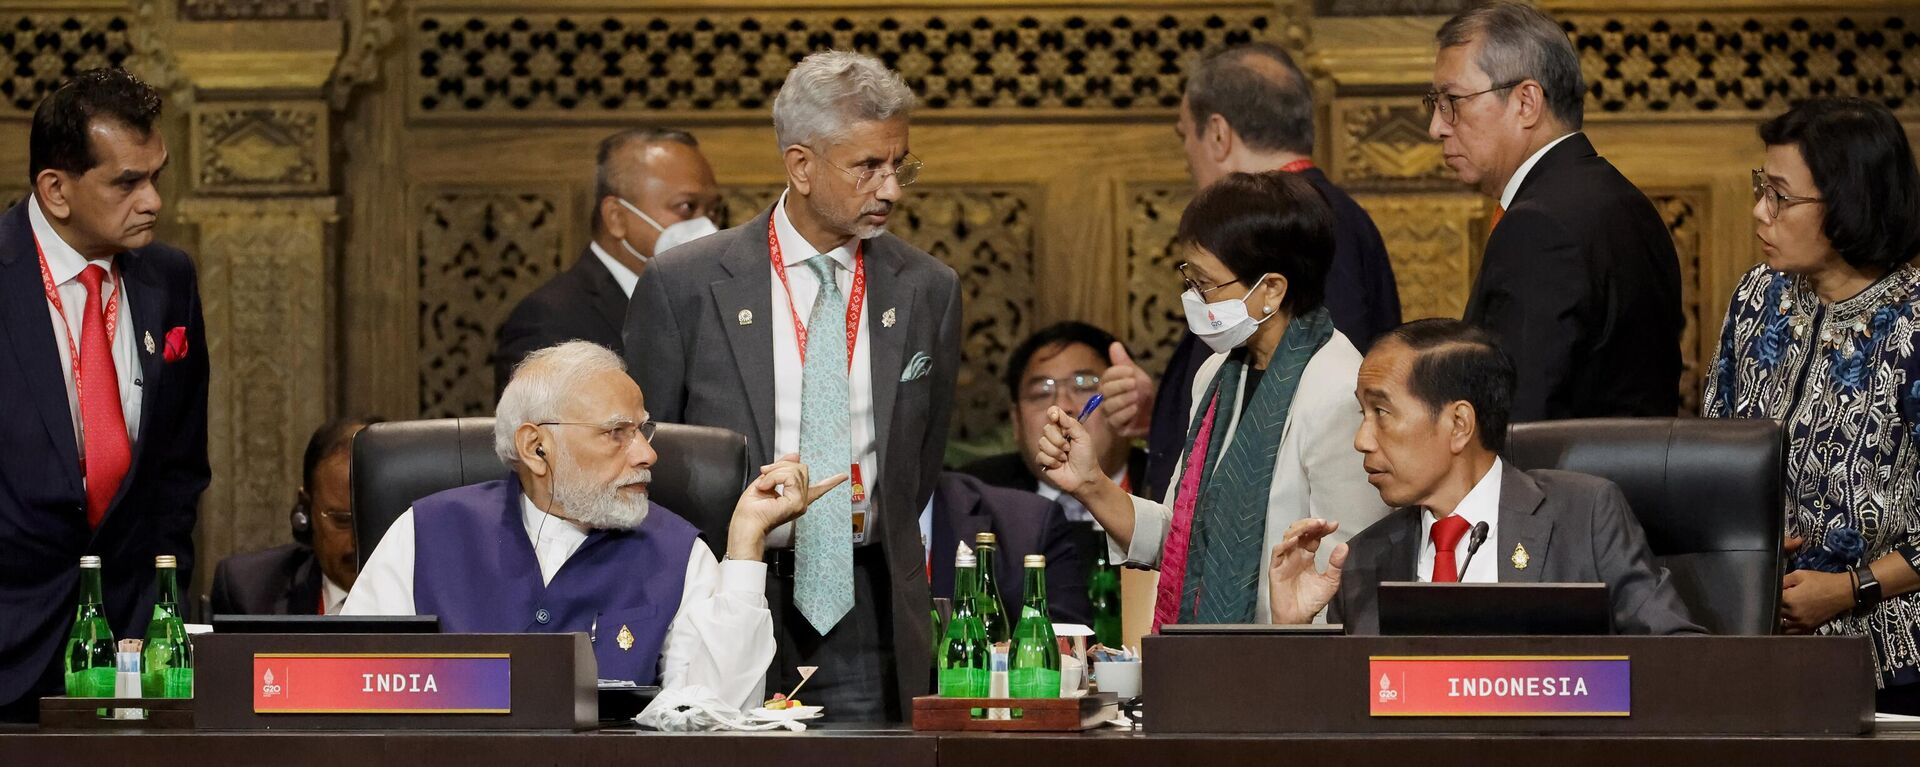 رئيس الوزراء الهندي ناريندرا مودي، جالسًا على اليسار، ورئيس إندونيسيا جوكو ويدودو، جالسًا على اليمين، يحضران جلسة في قمة قادة مجموعة العشرين، في نوسا دوا، بالي، إندونيسيا 16 نوفمبر 2022. - سبوتنيك عربي, 1920, 25.02.2023